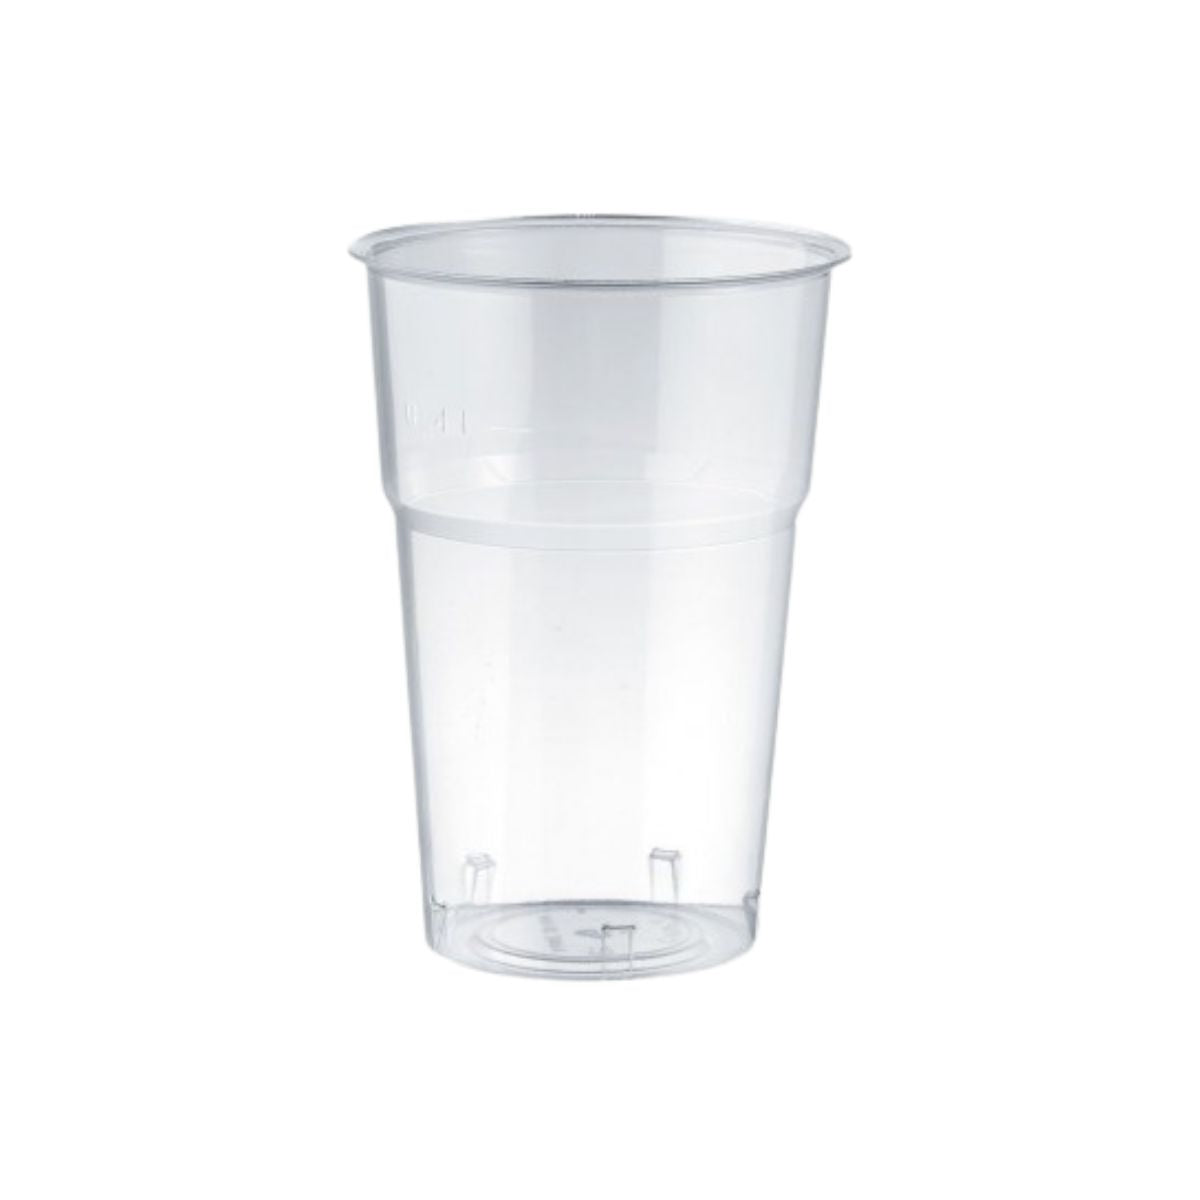 50 pz Bicchiere trasparente monouso in pet da € 0,05 Cad + Iva